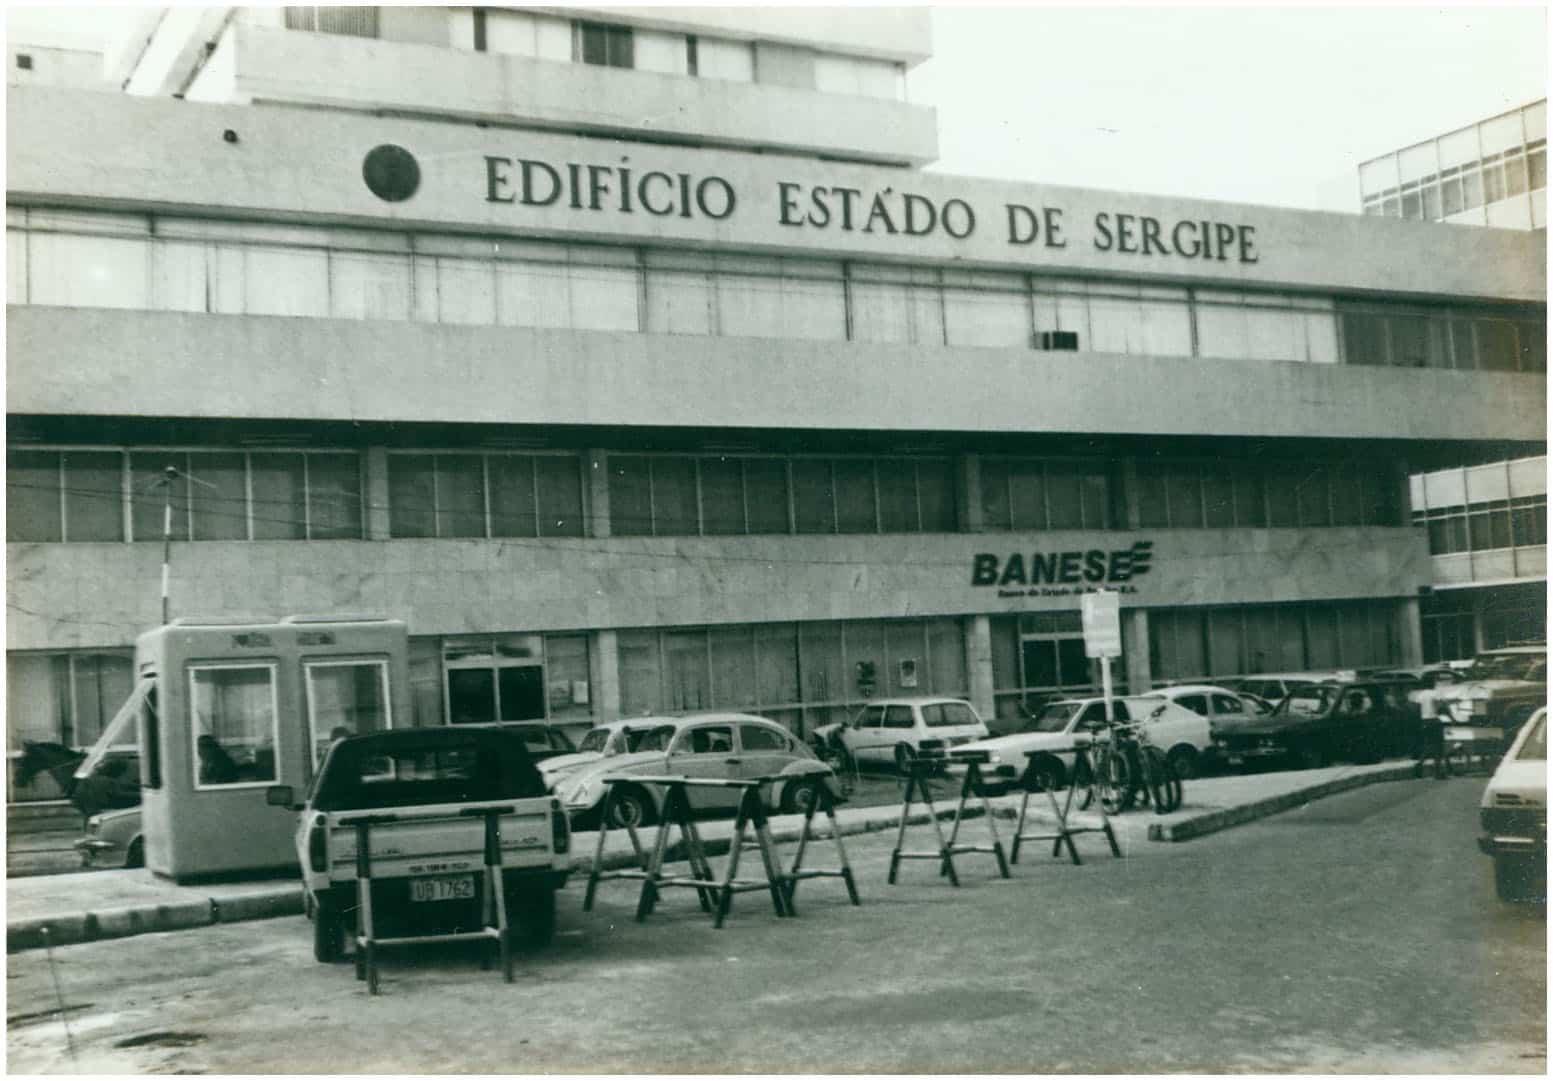 Banco do Estado de Sergipe (Banese) - BGIP3, BGIP4